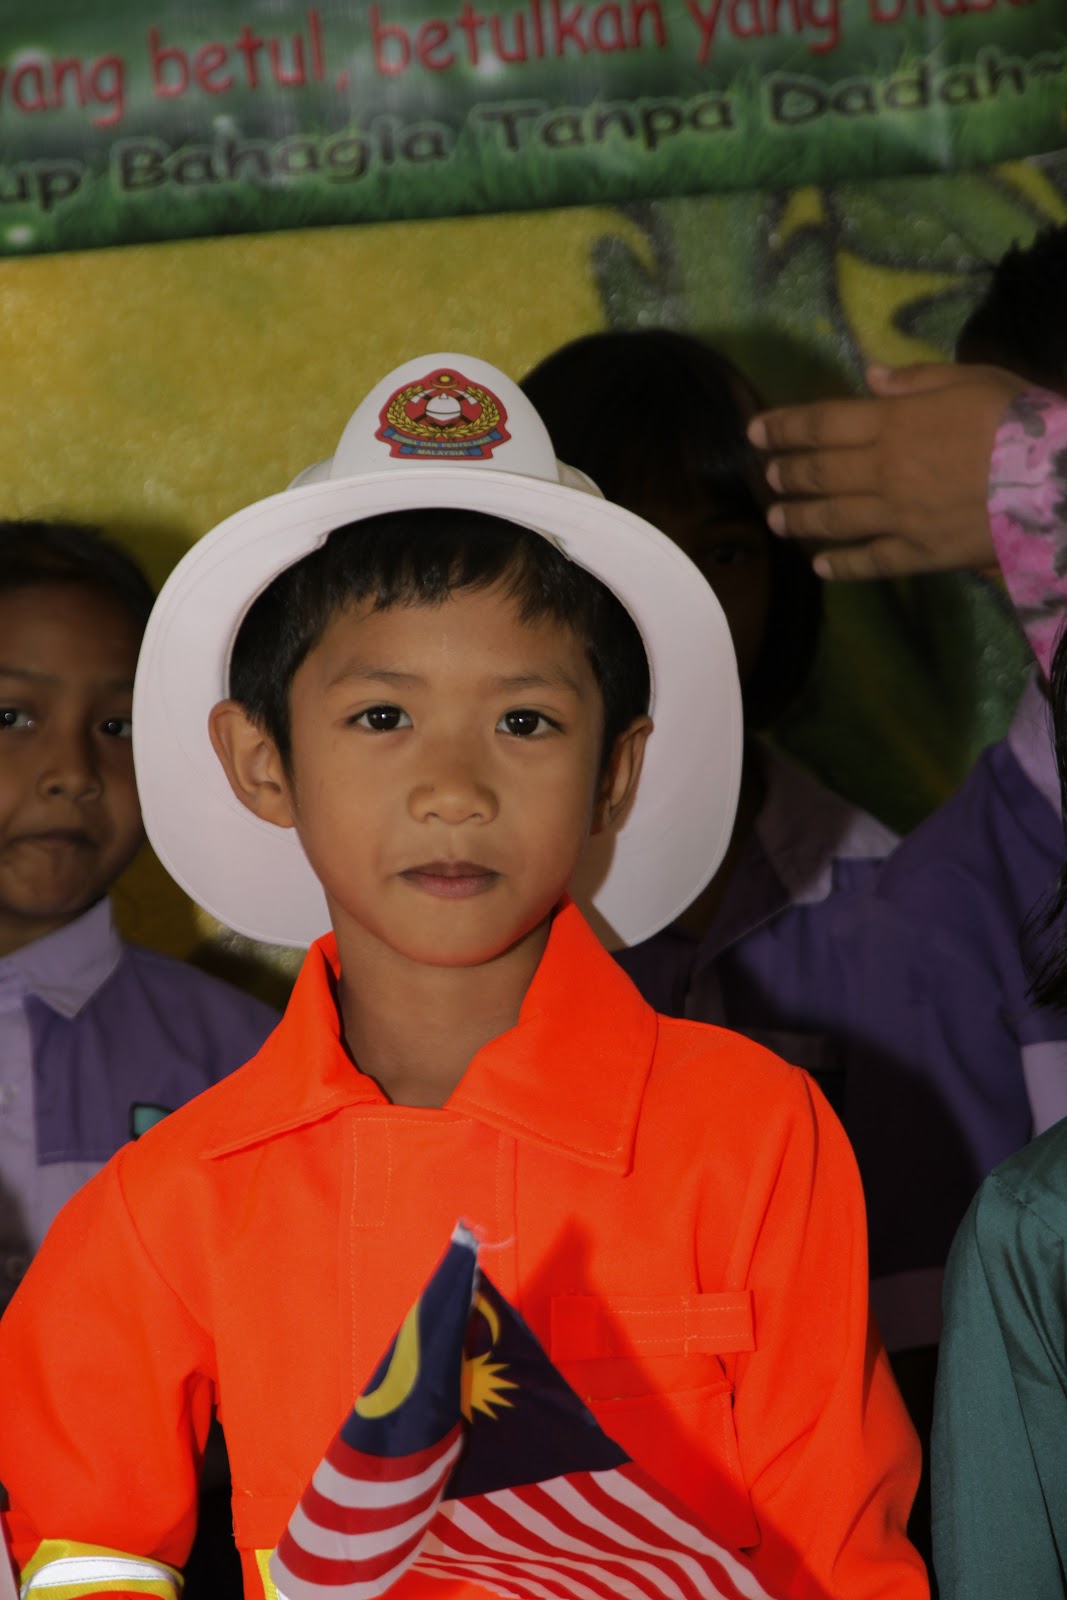 Sekolah Kebangsaan Taman Putra Perdana: SAMBUTAN HARI 